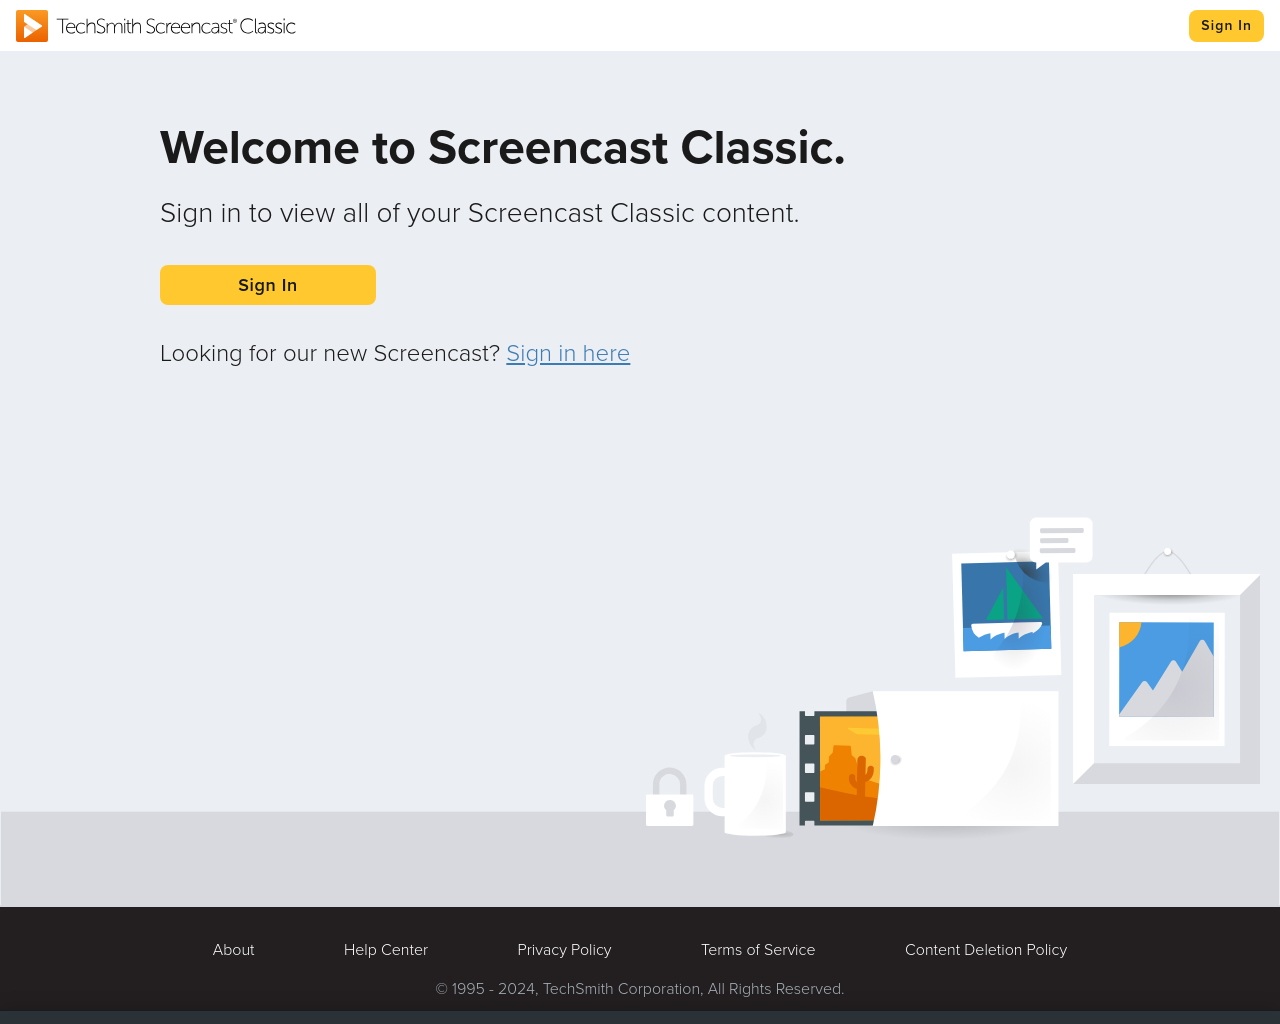 screencast.com